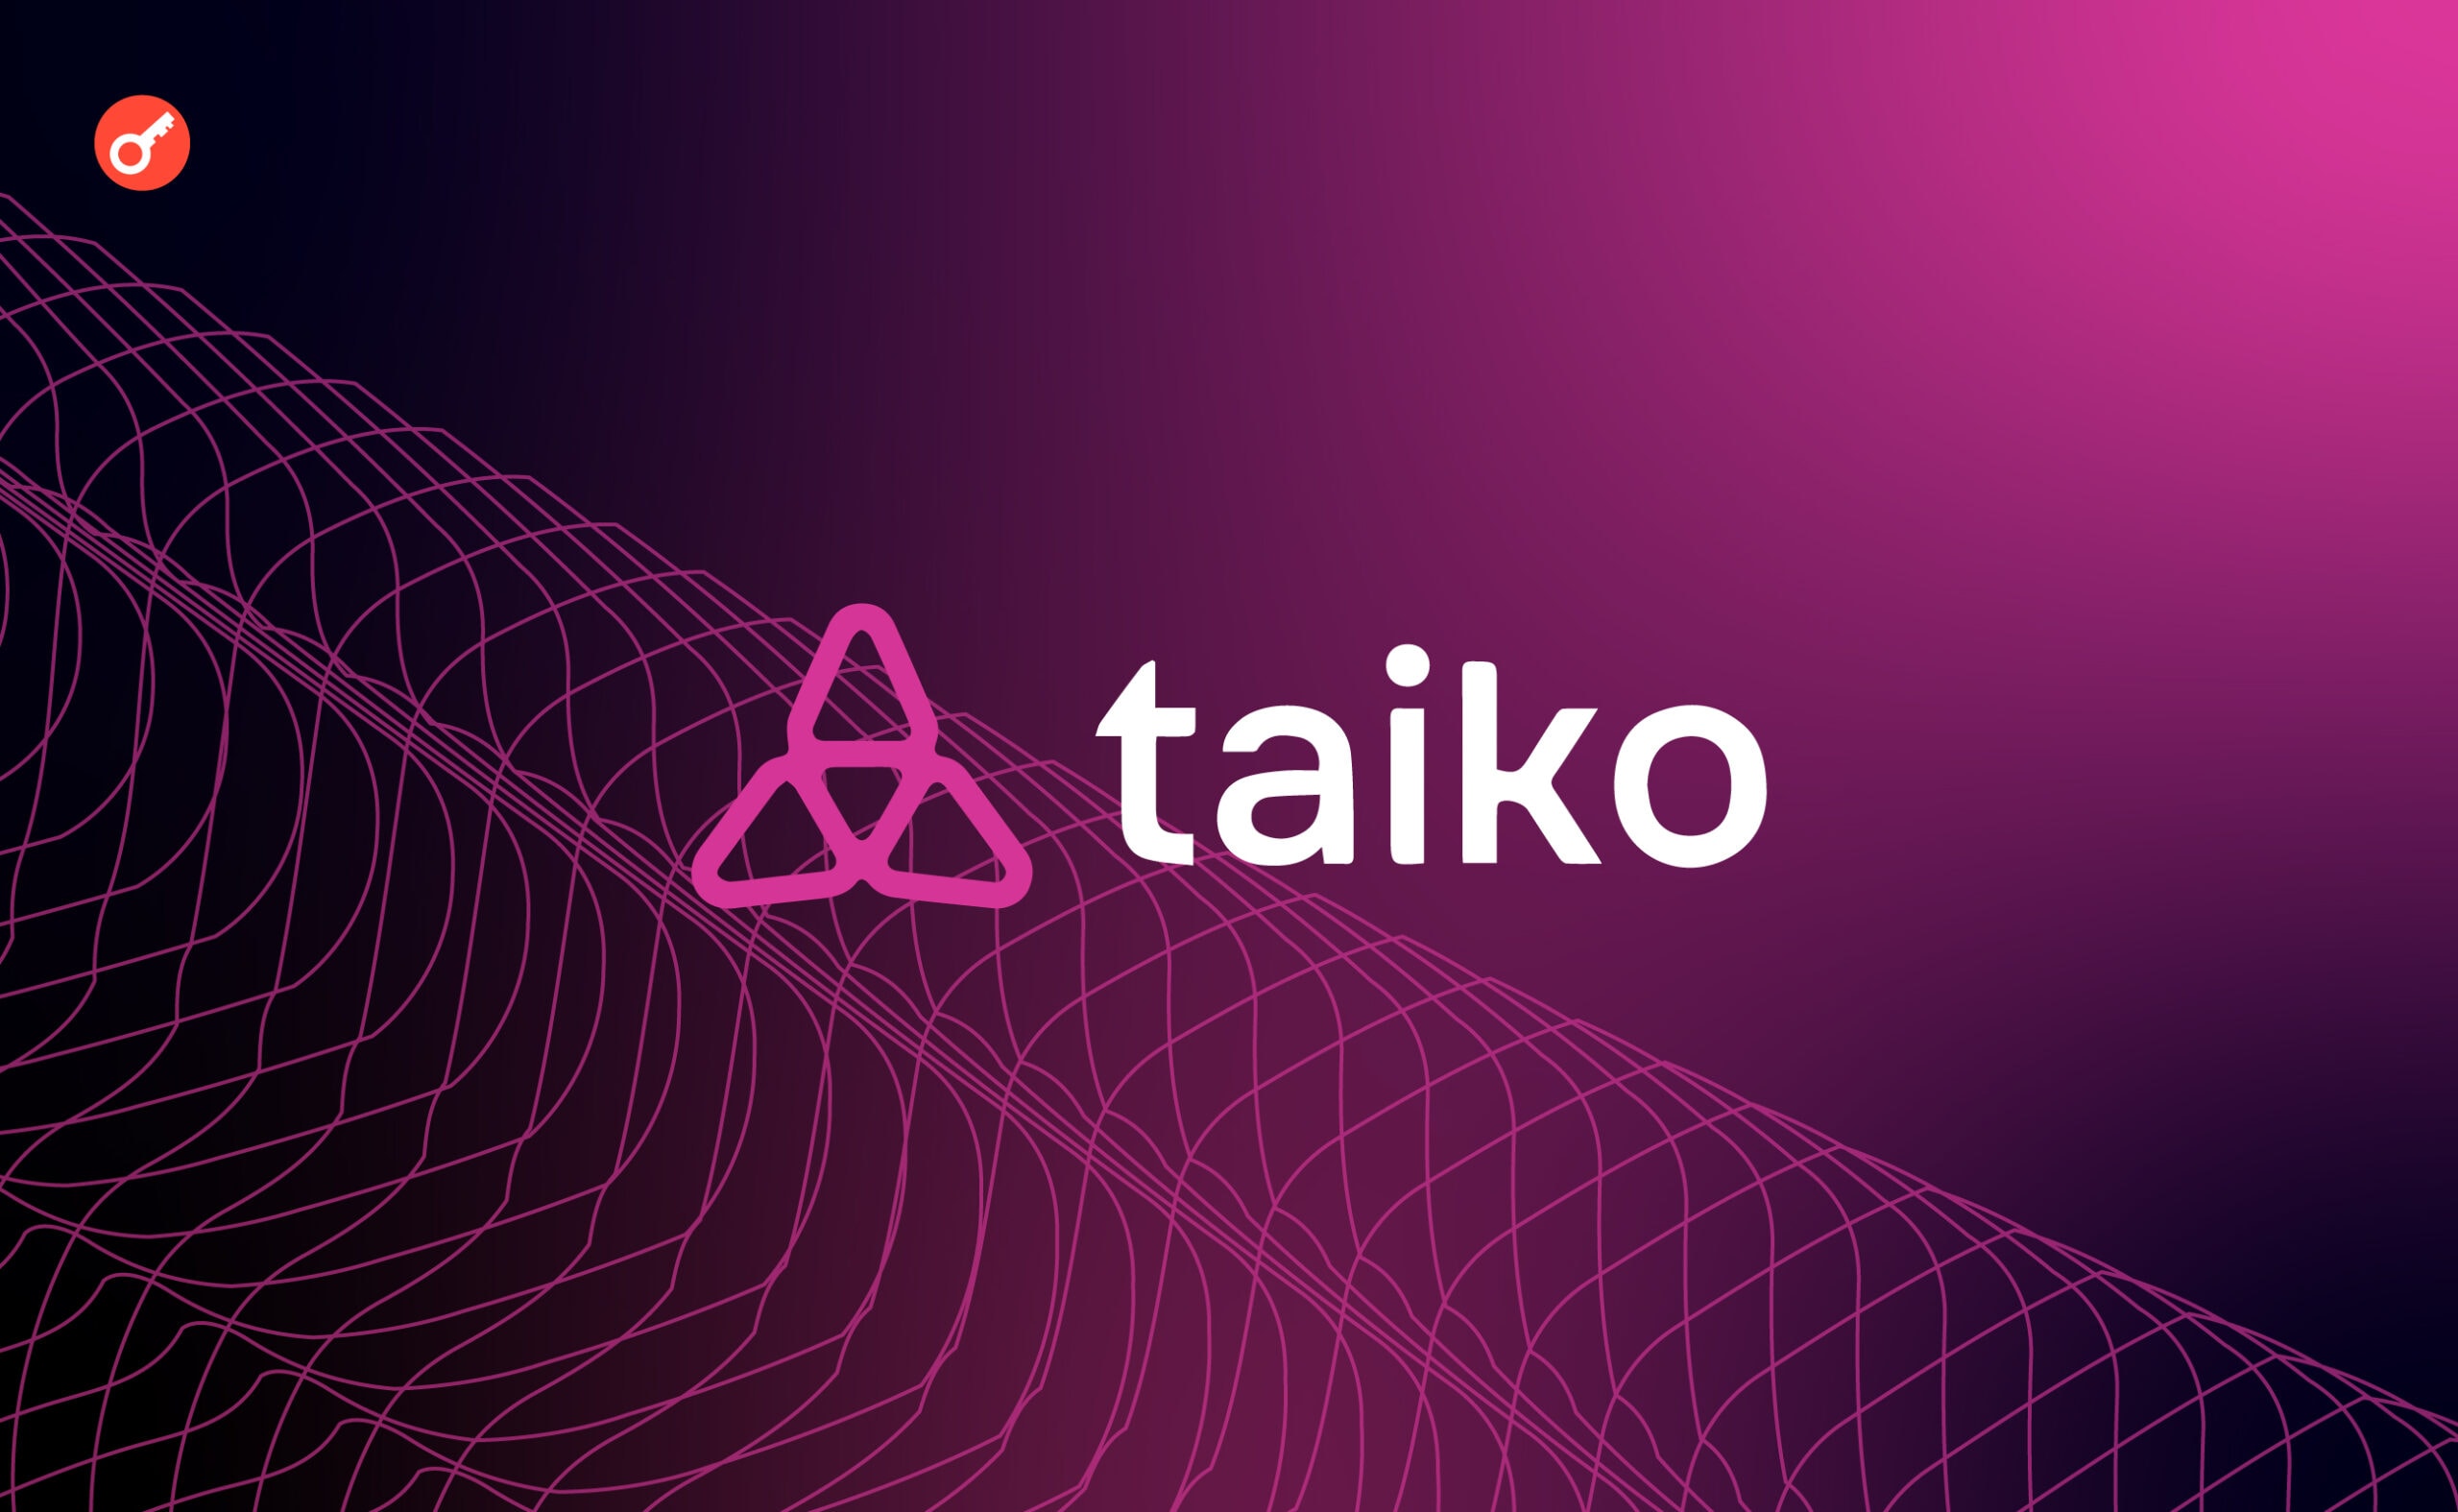  L2-проєкт Taiko залучив $15 млн інвестицій. Головний колаж новини.